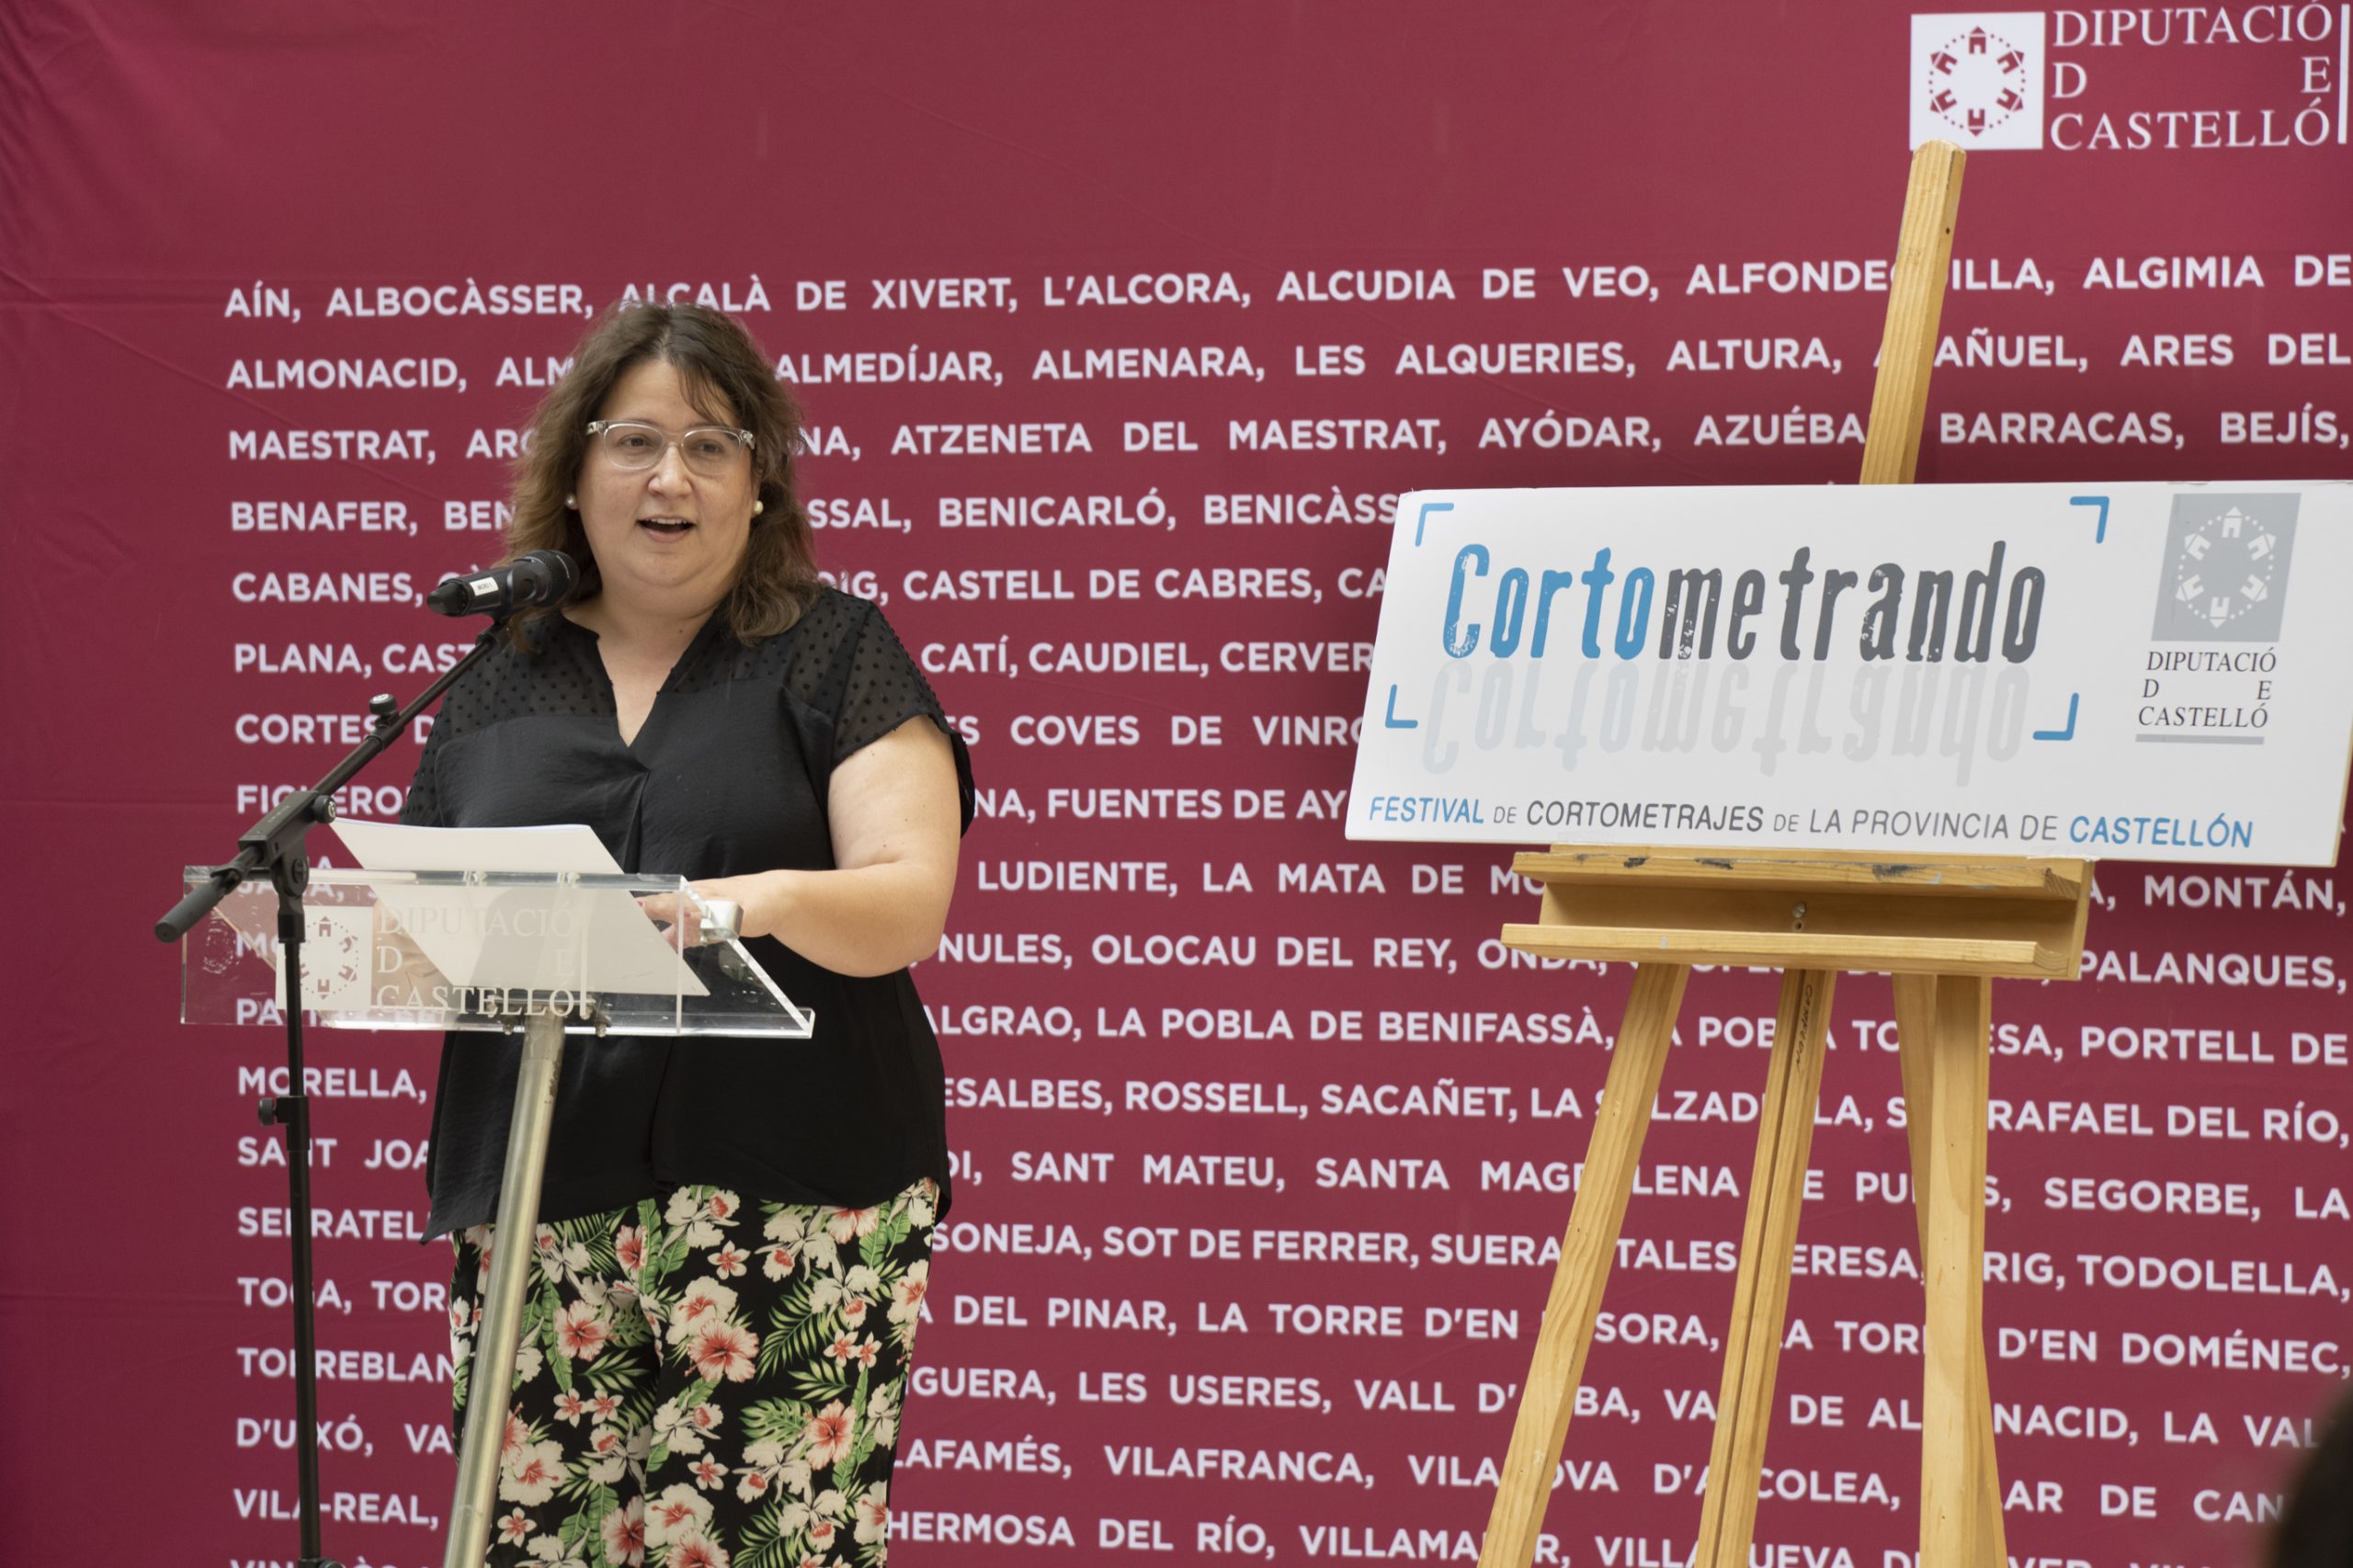 La Diputación de Castellón renueva de arriba abajo ‘Cortometrando’